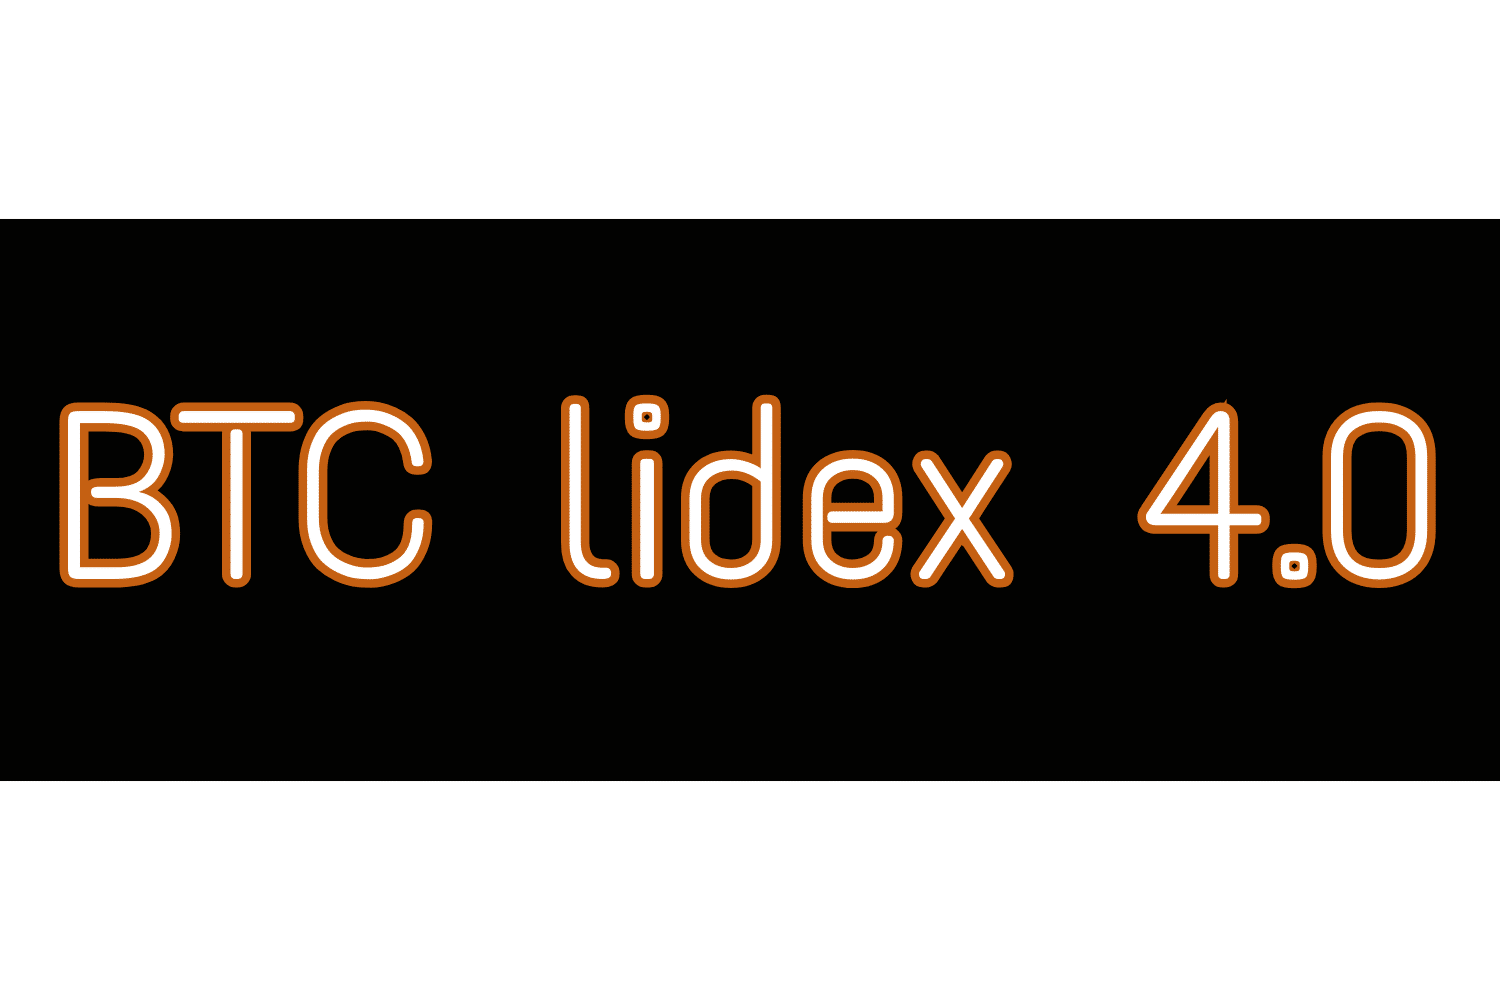 Регистрация в Lidex 4.0 бит